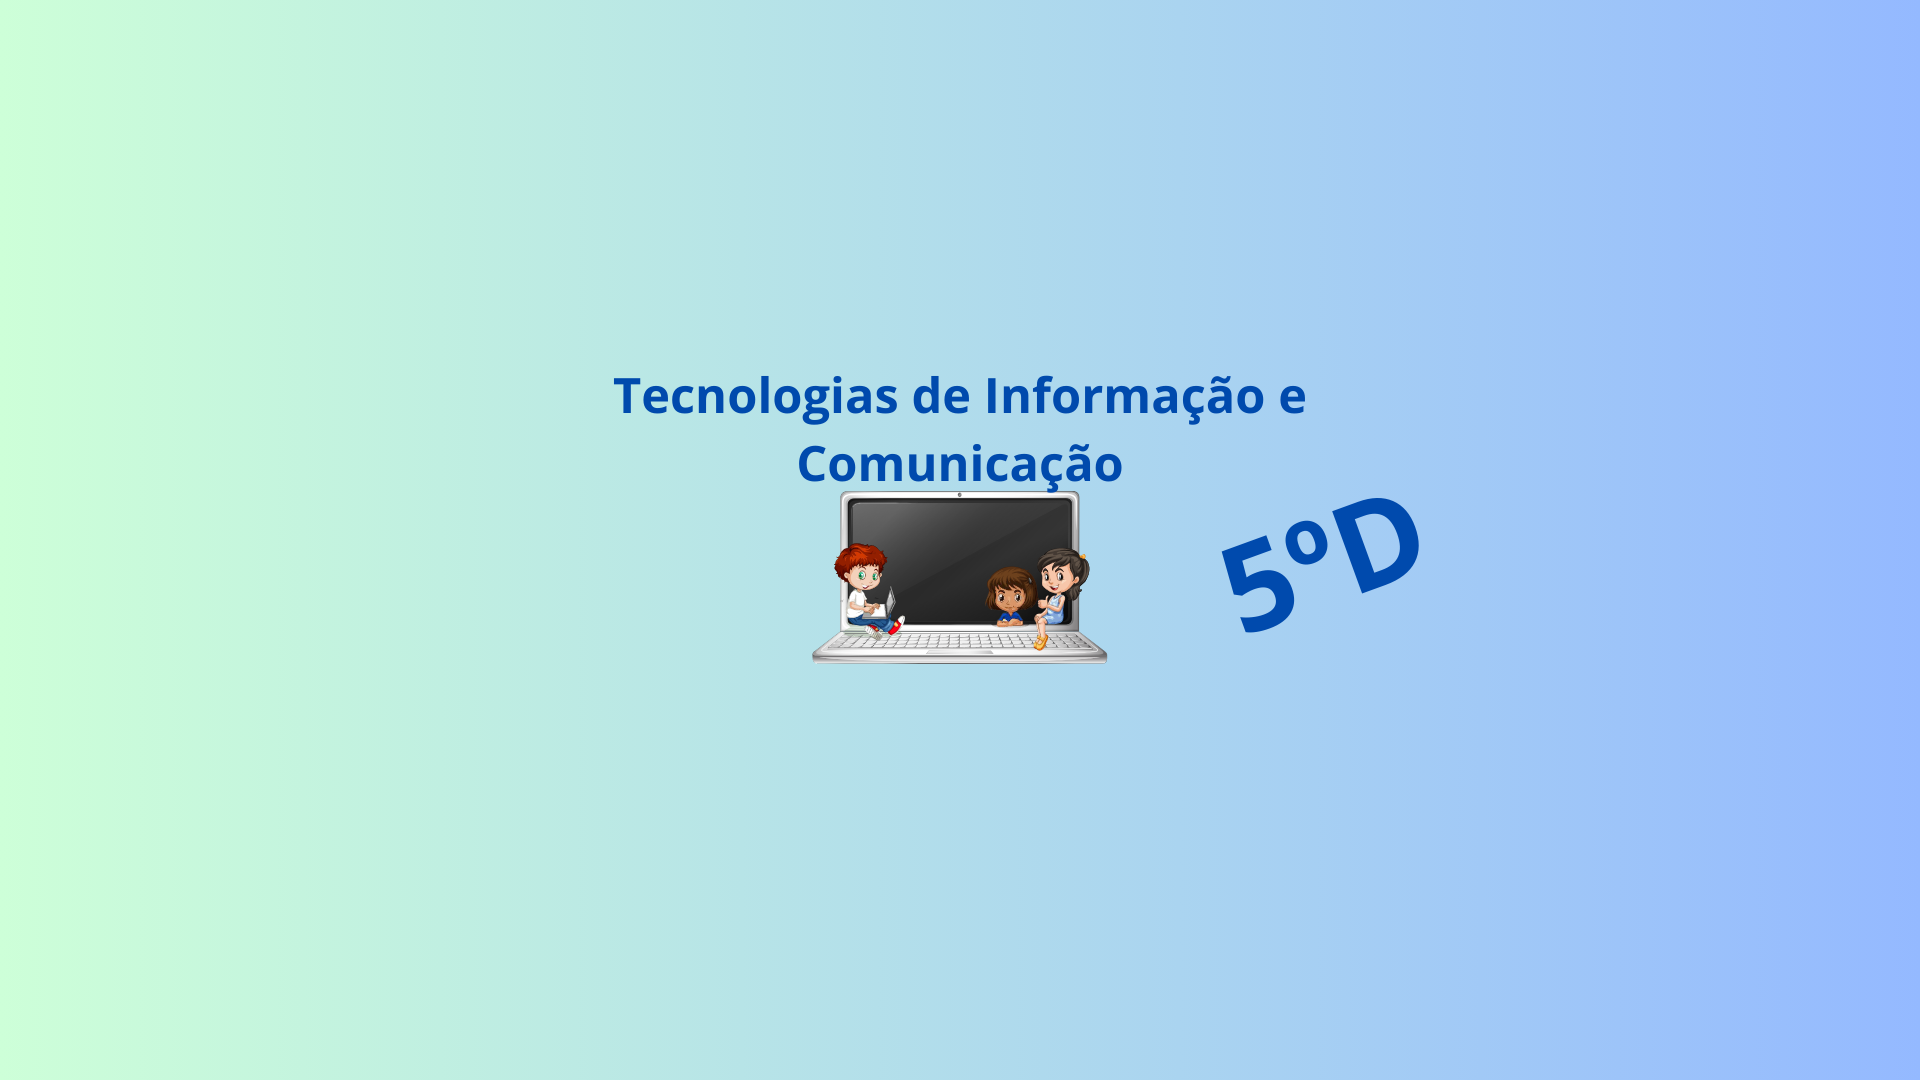 5D - Tecnologias de Informação e Comunicação